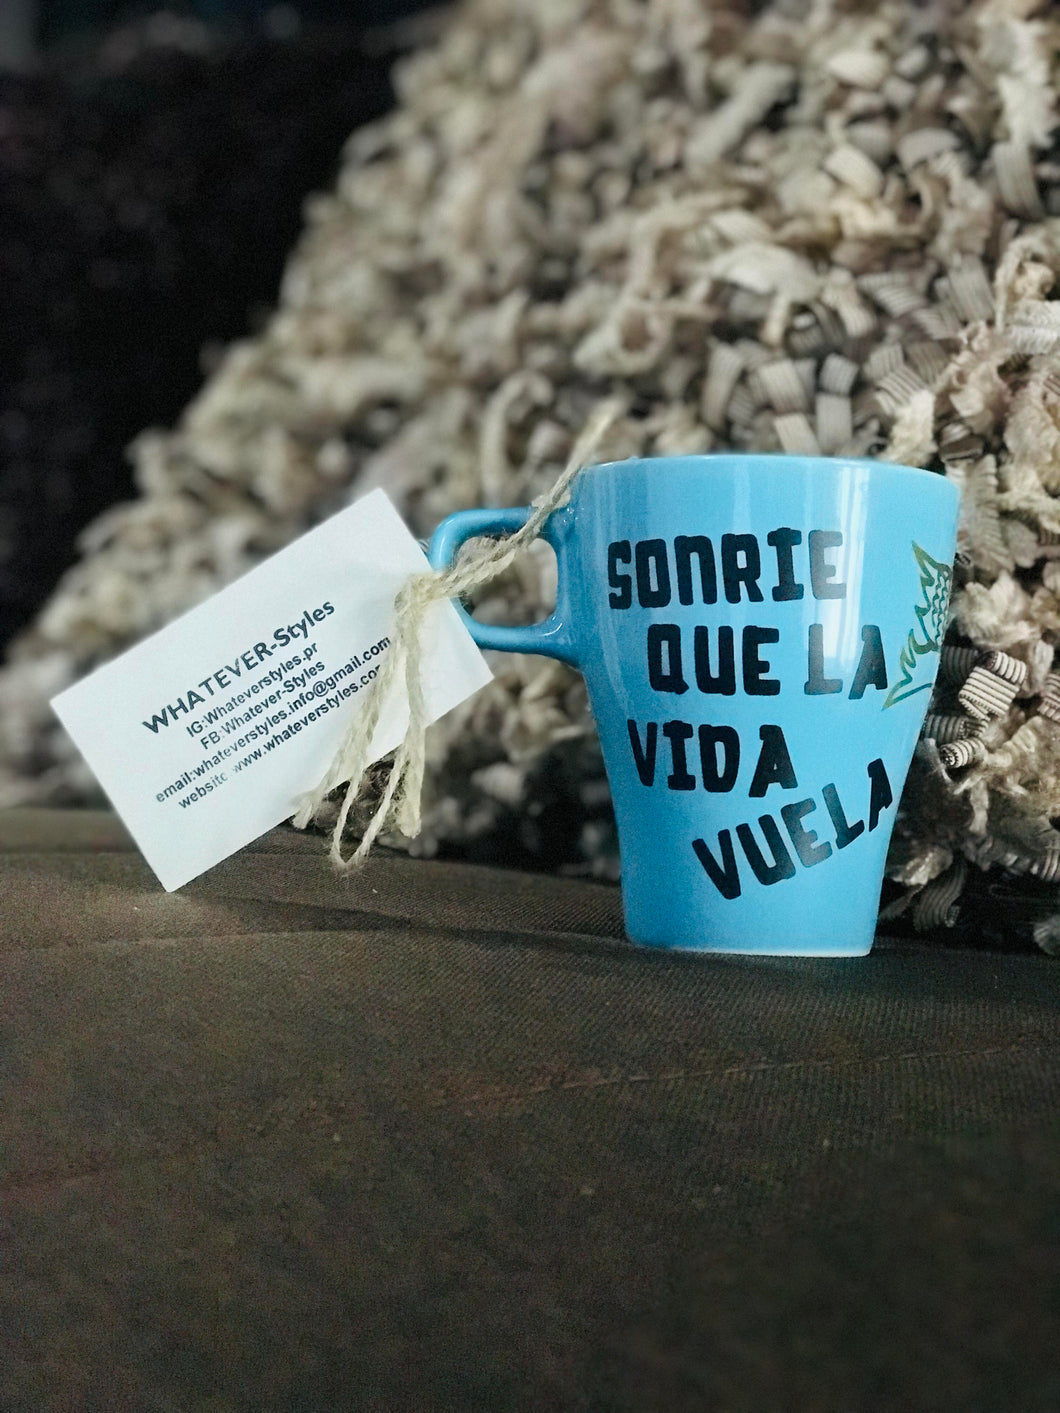 Personalize Gifts - Coffee Mug